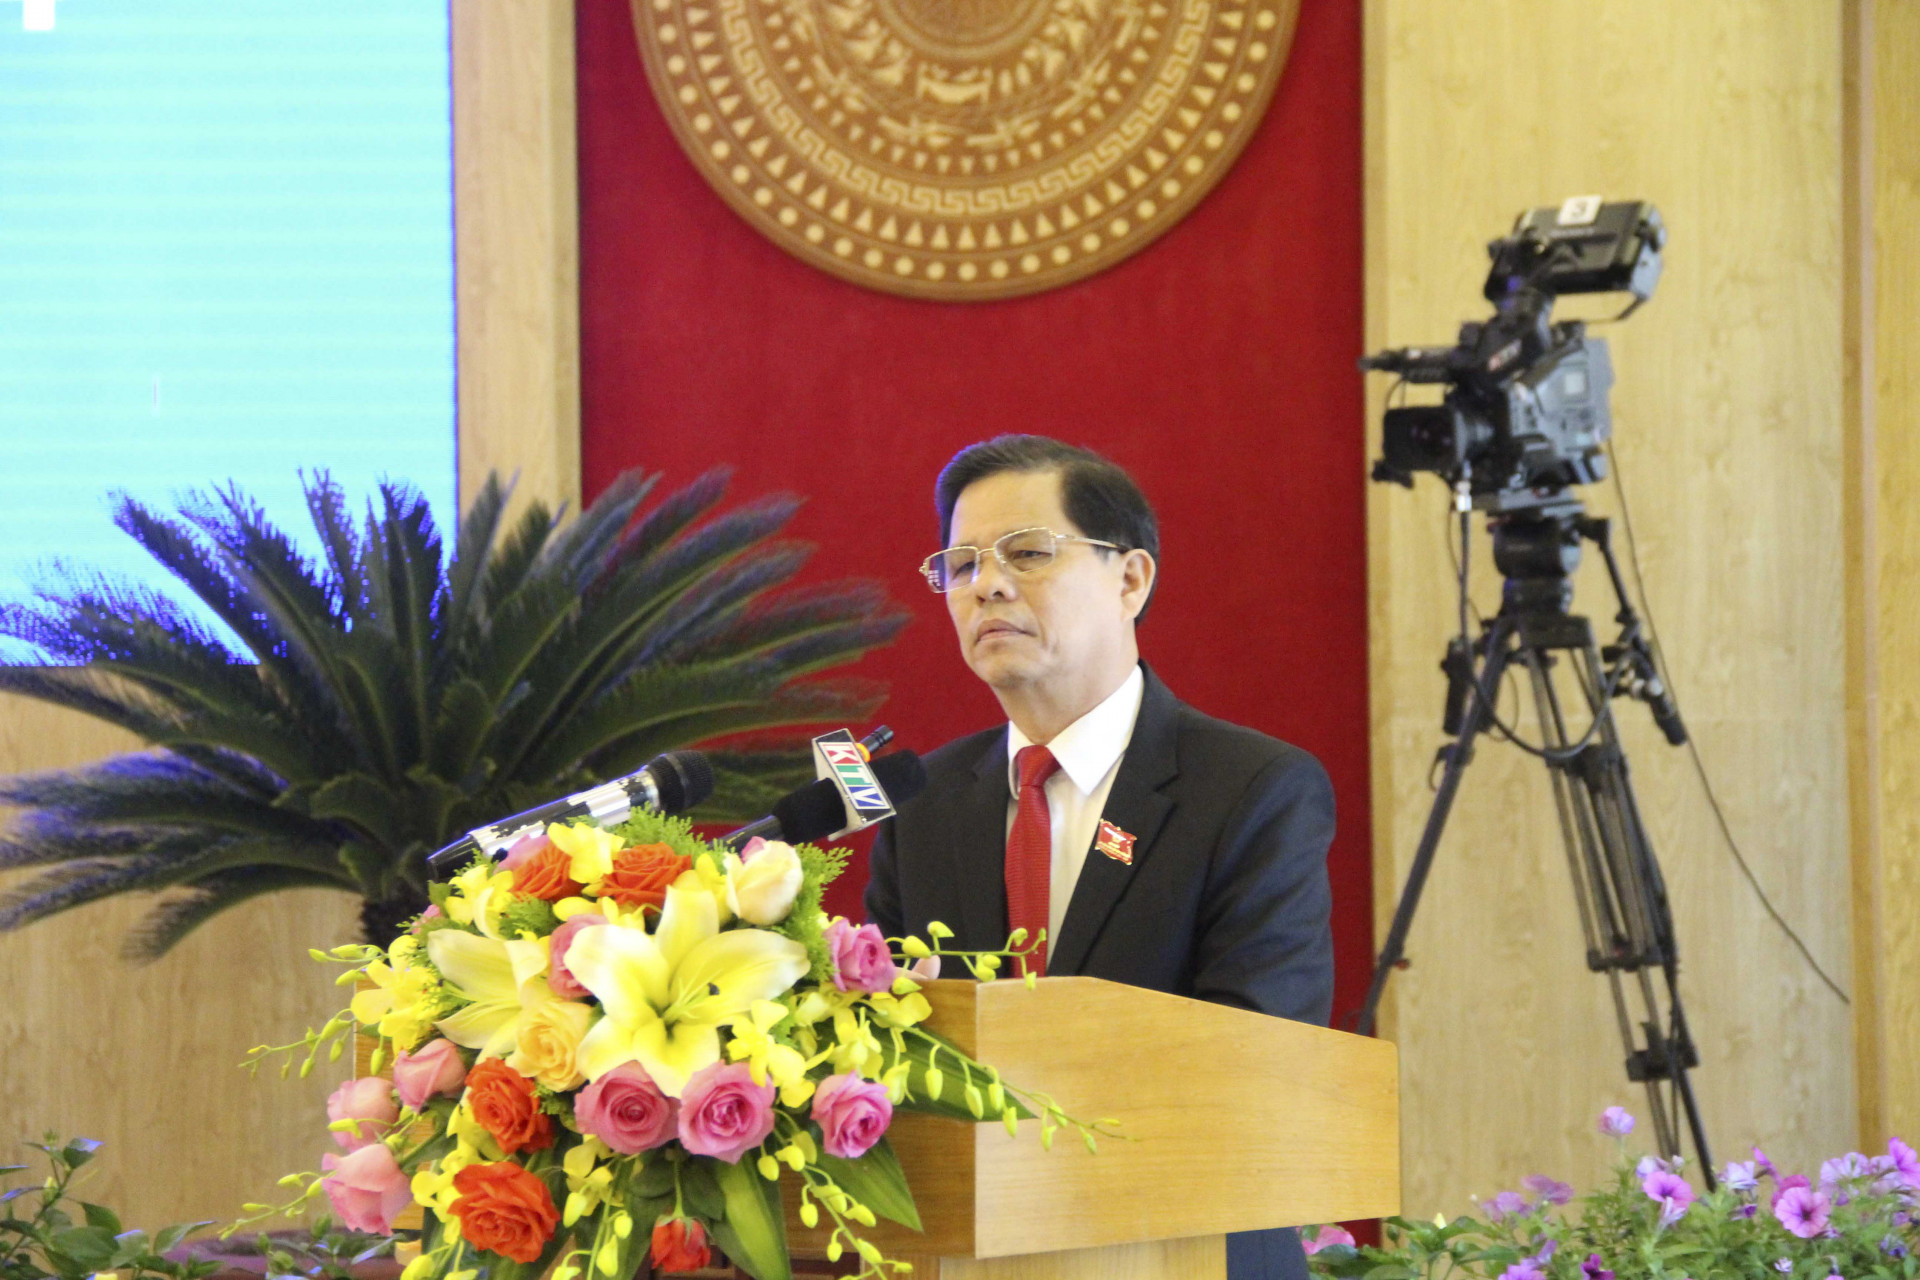 Ông Nguyễn Tấn Tuân phát biểu tiếp thu, giải trình các vấn đề cử tri quan tâm